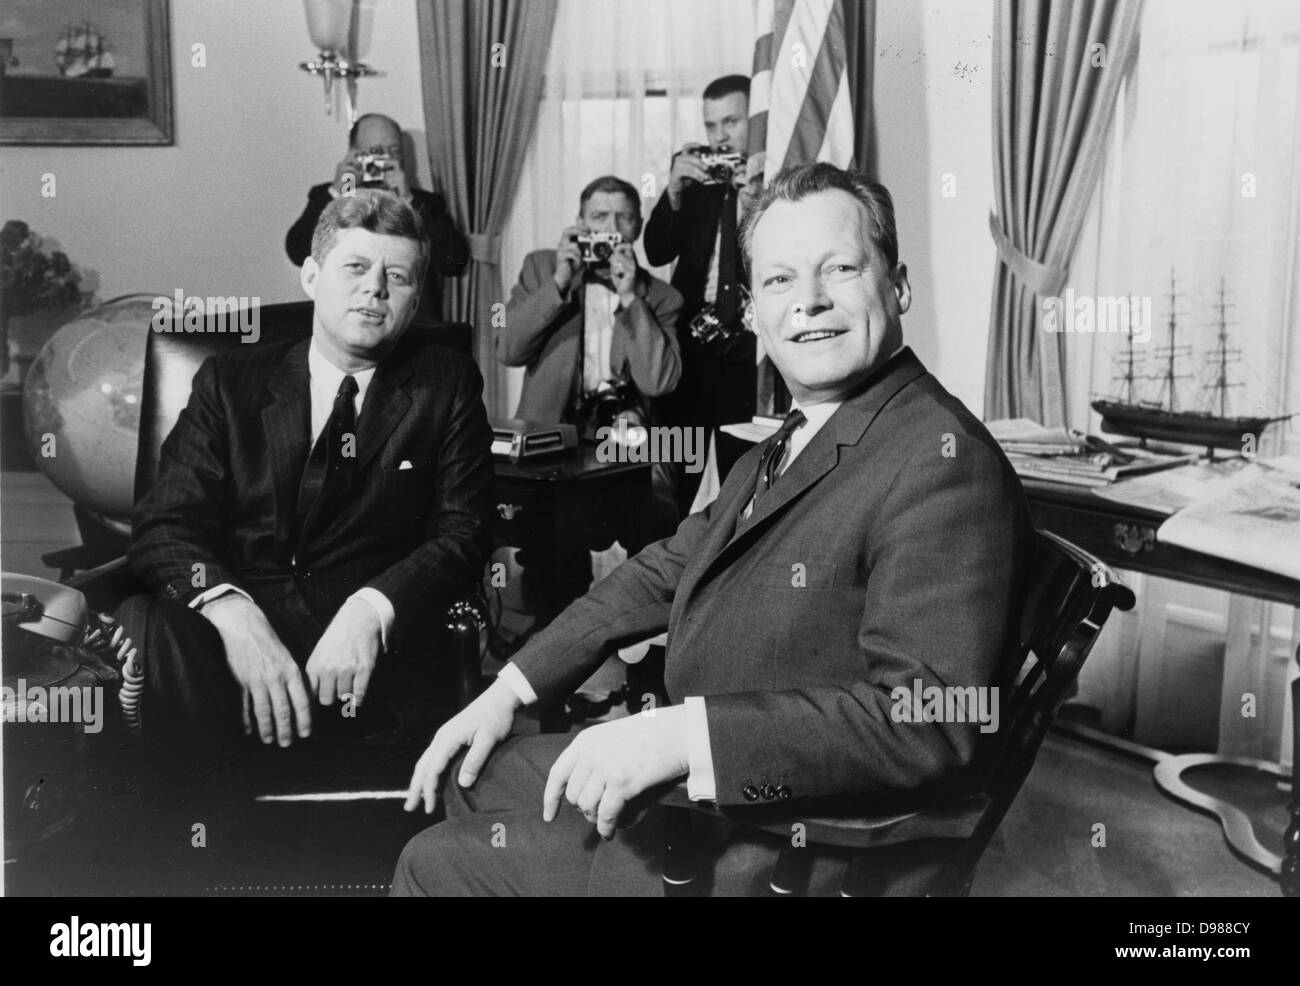 Präsident John f. Kennedy und Willy Brandt, Bürgermeister von Berlin, im Weißen Haus, 13. März 1961. Fotografin Marion S.Trikosko. Stockfoto